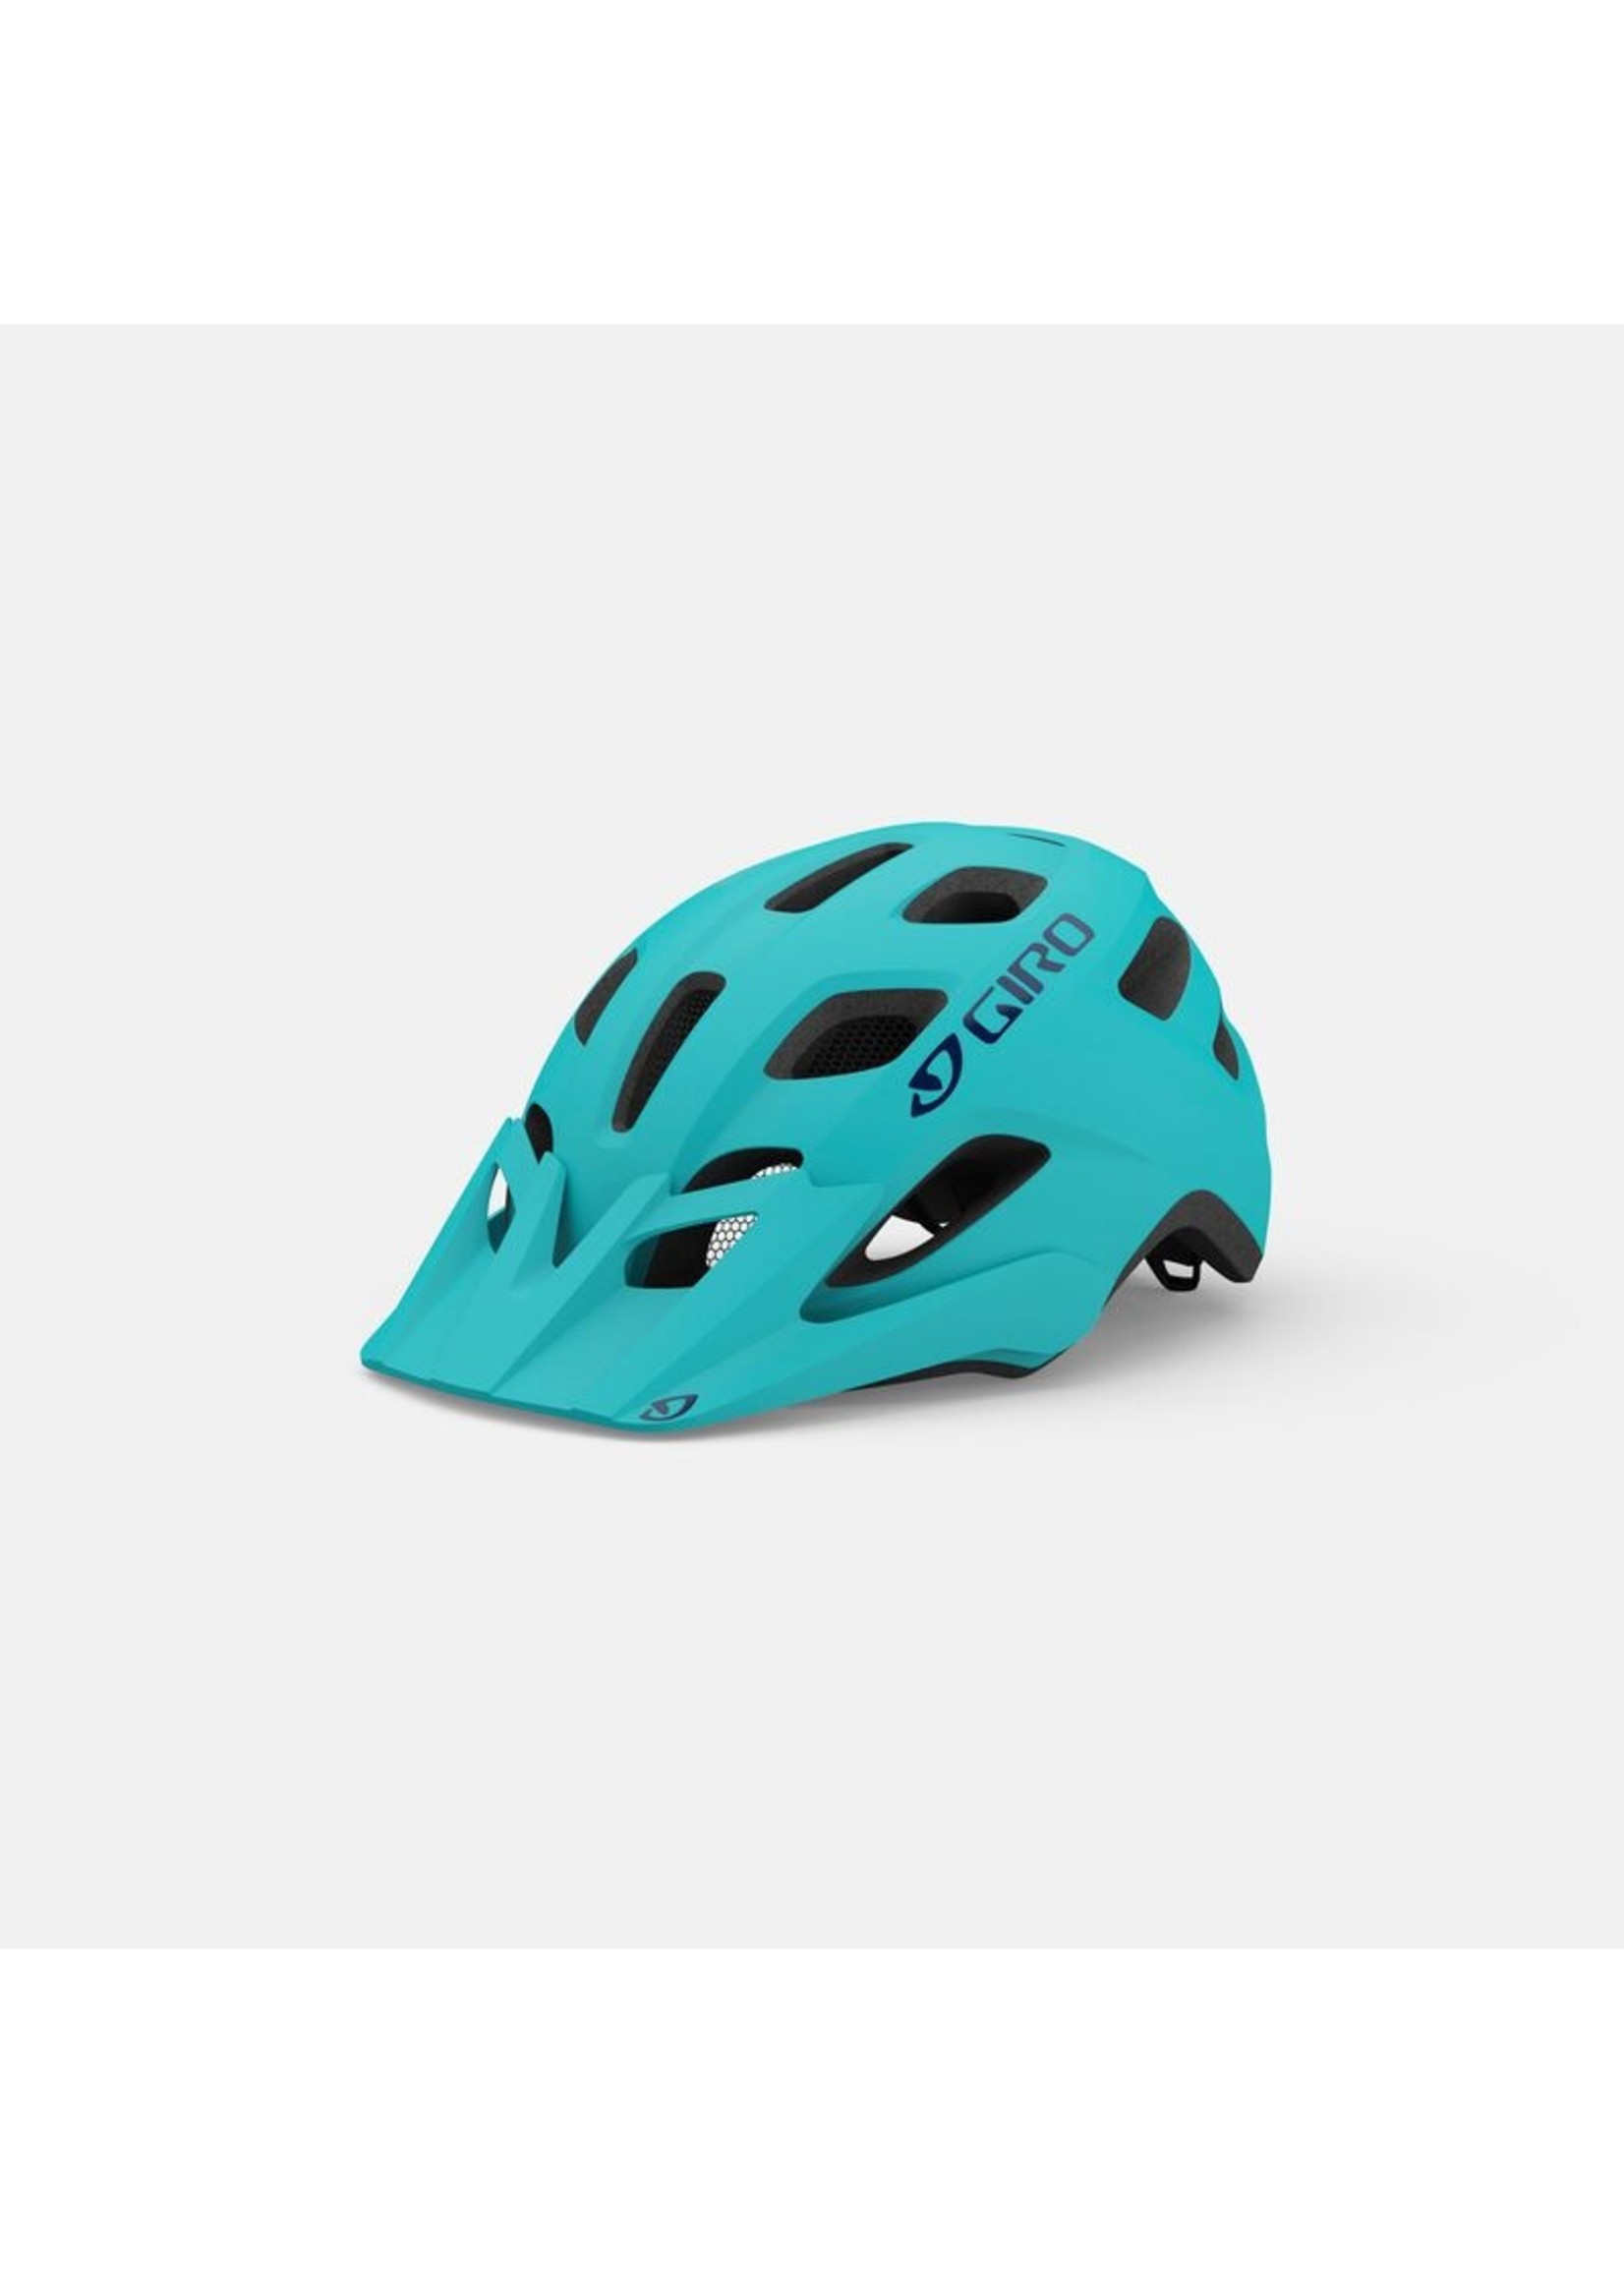 Giro Helmet, Giro Tremor MIPS, Child,